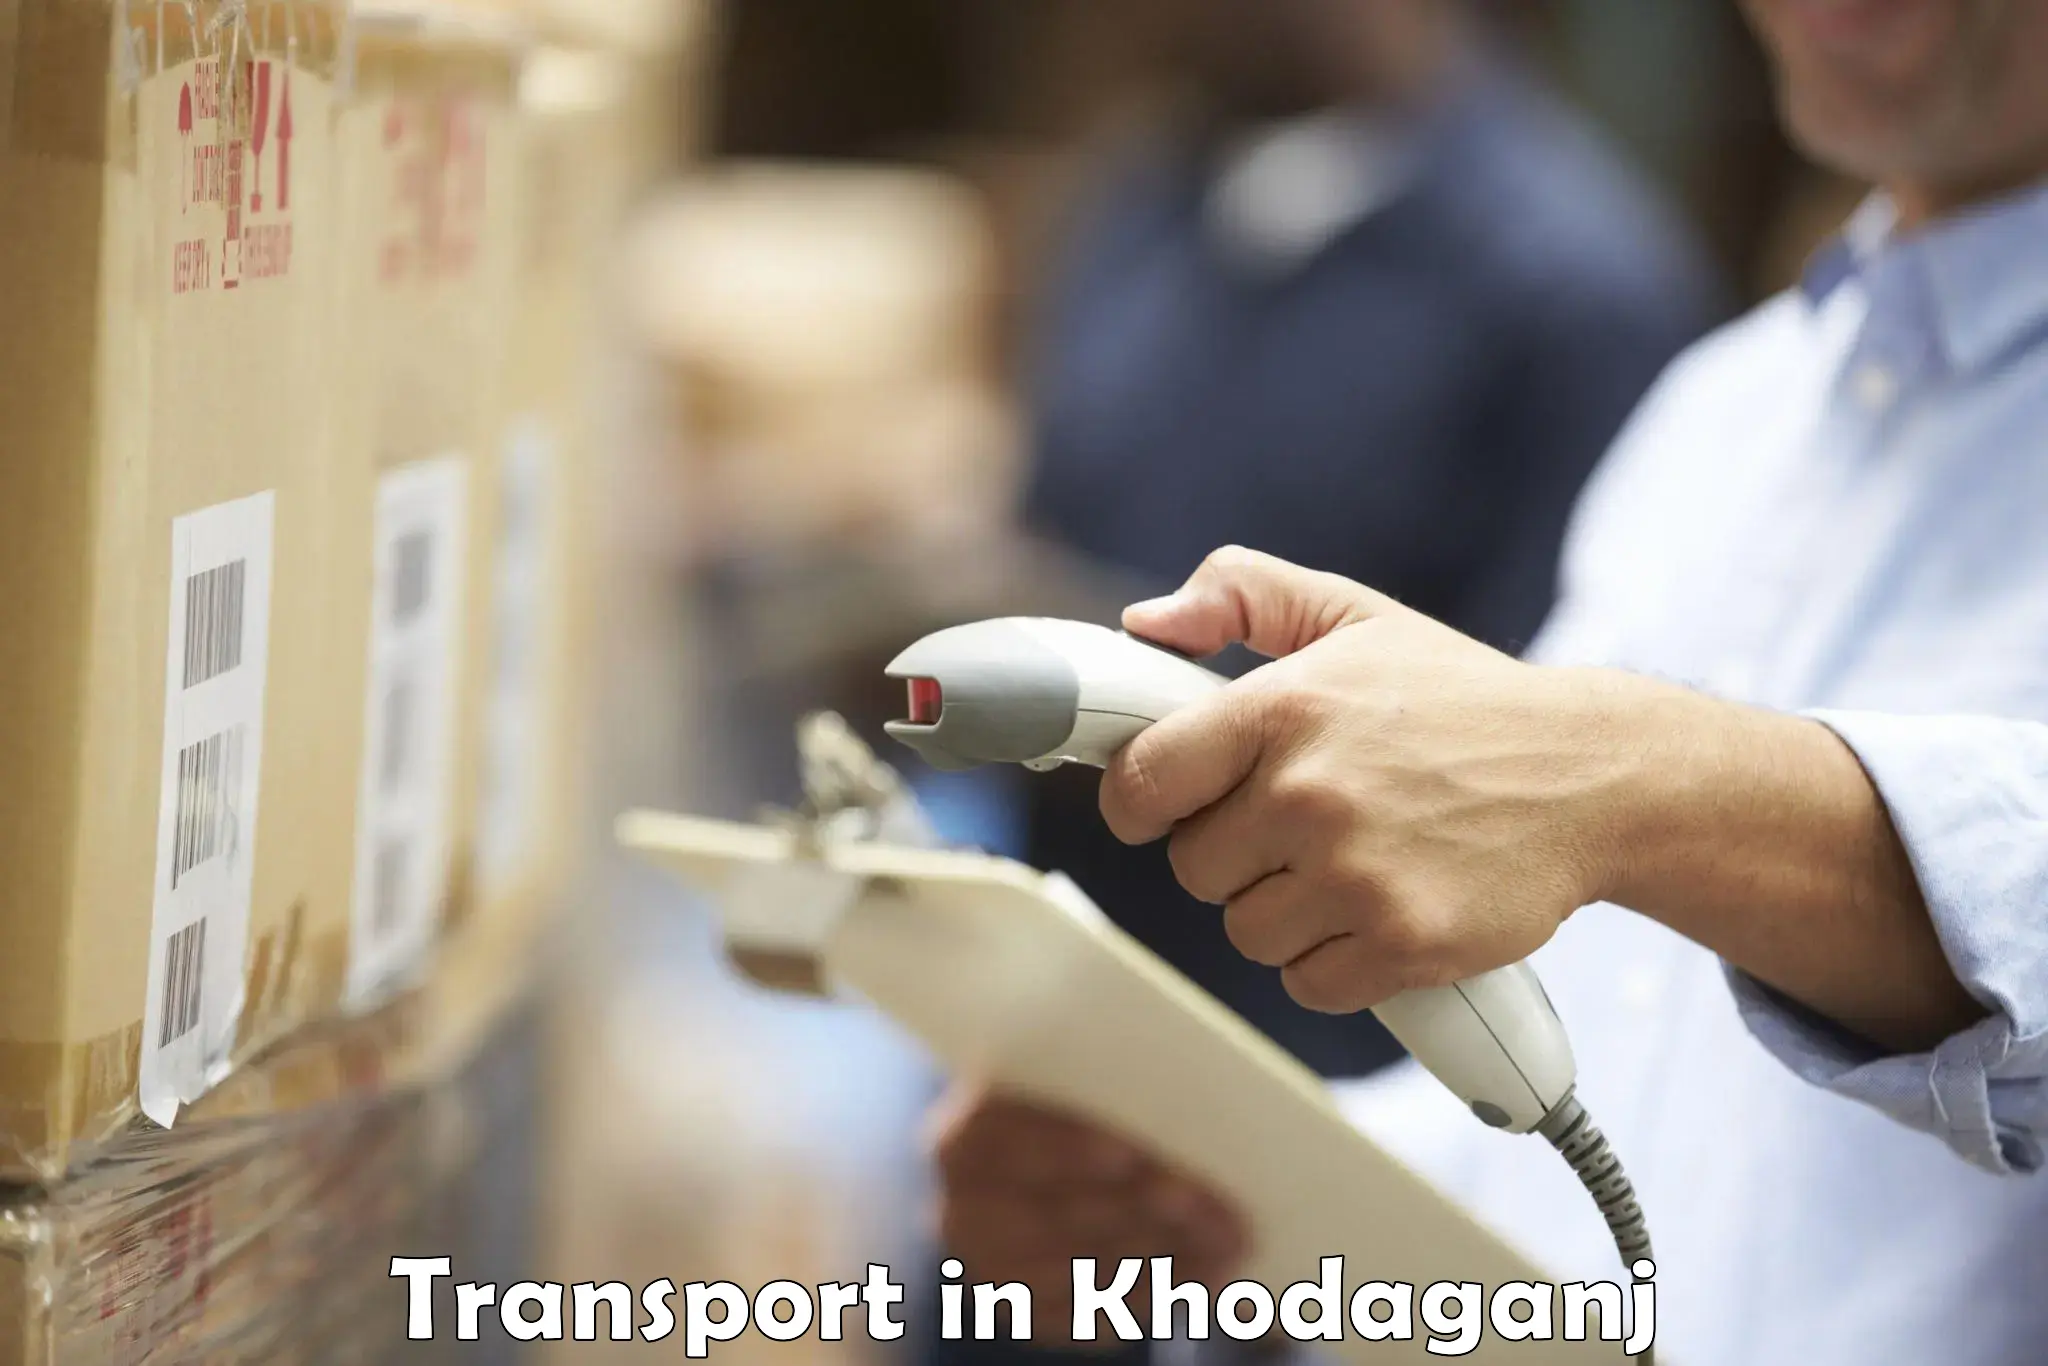 Parcel transport services in Khodaganj